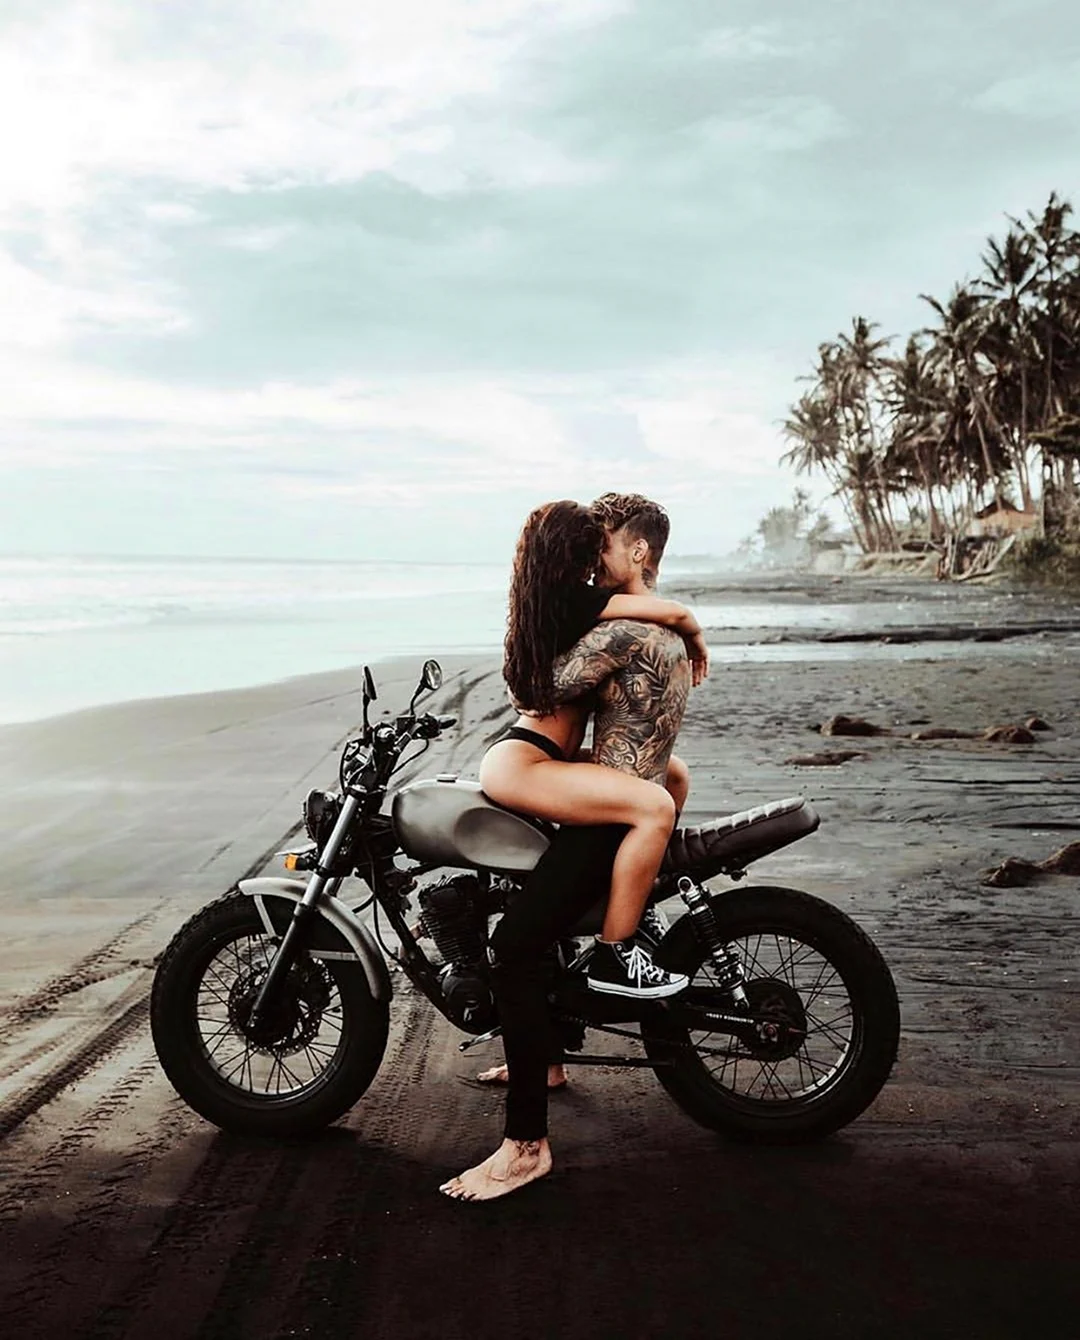 Парень с девушкой на мотоцикле